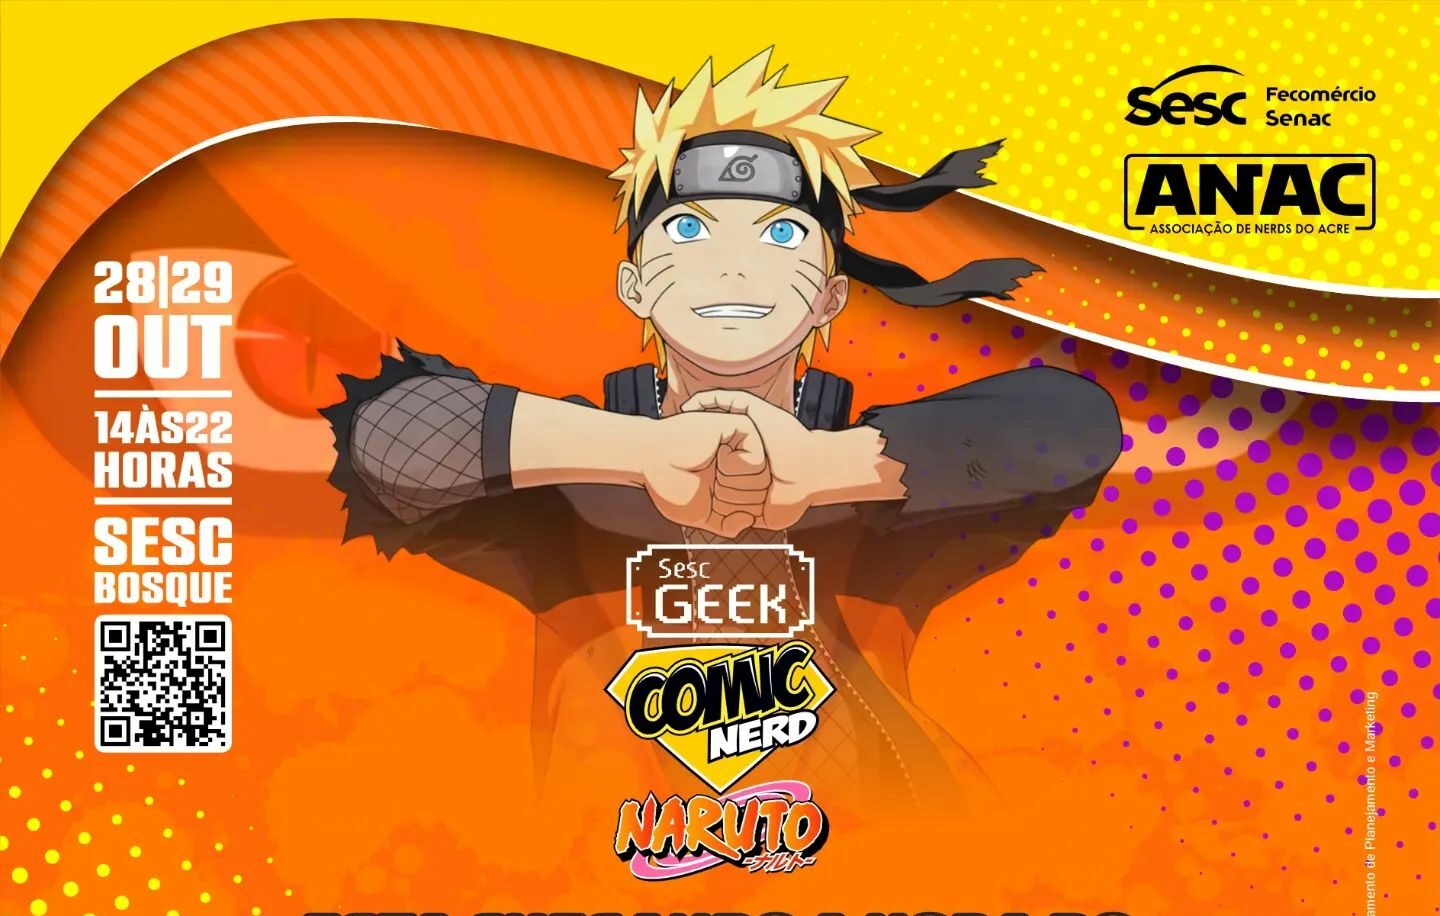 Com dubladora de Goku e Naruto, Sesc Geek promete fazer a alegria do  público nerd no AP, Amapá